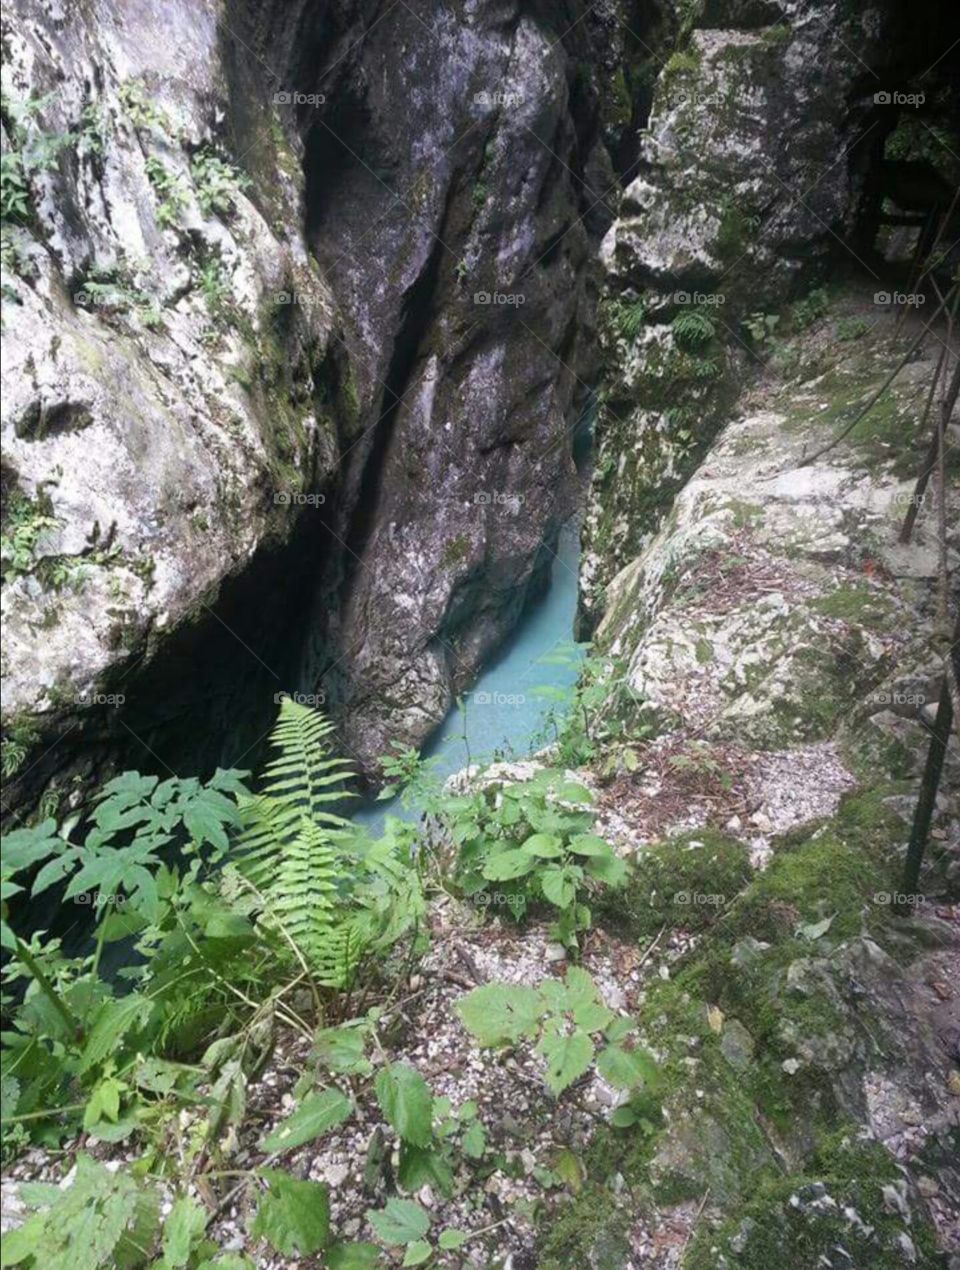 Triglav national park, Slovenia